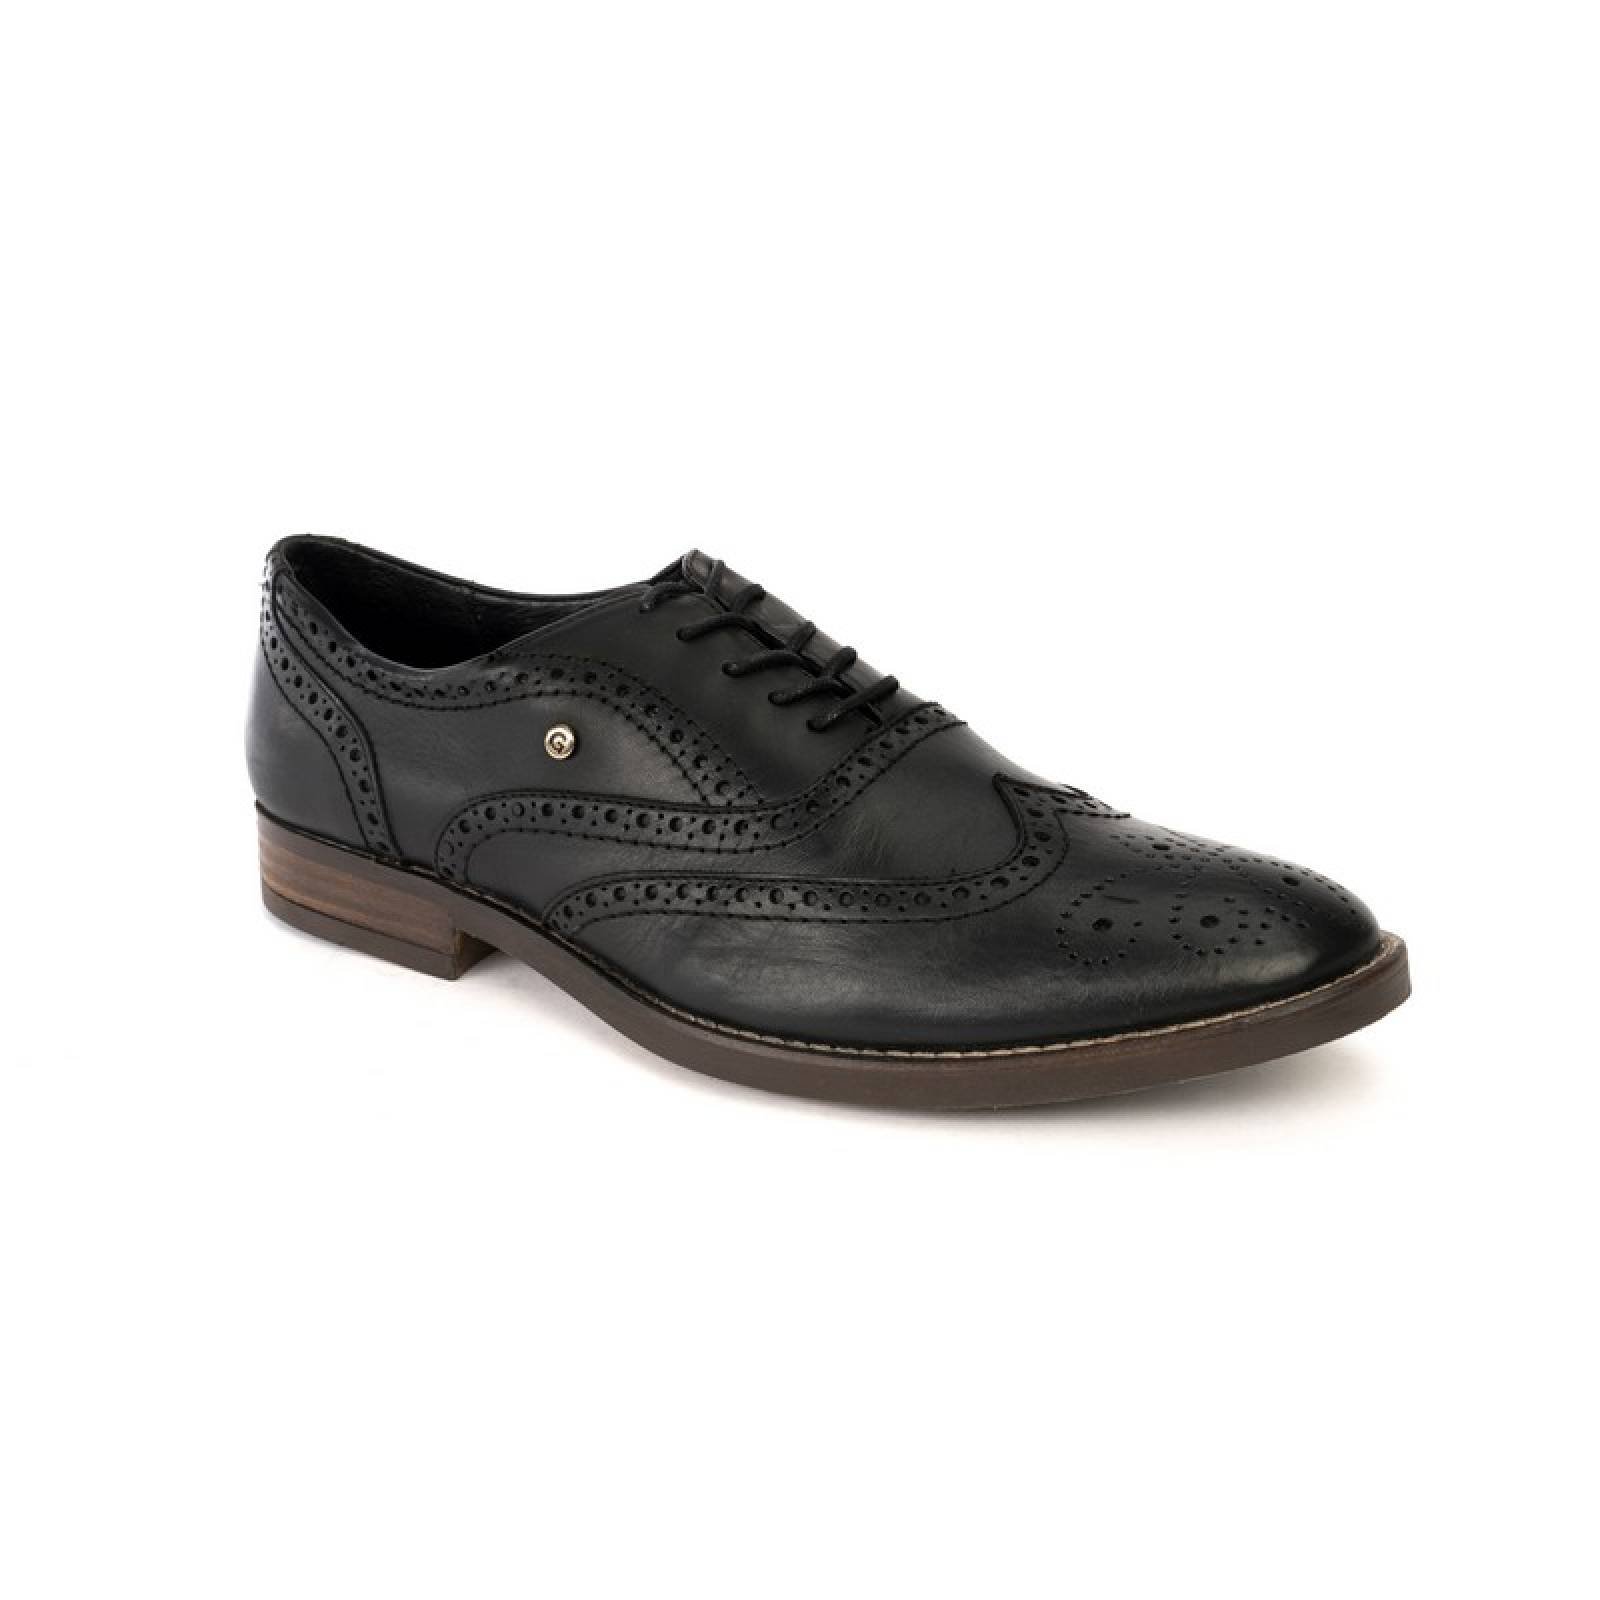 Jarking - Zapato Casual Negro Bostoniano Clásico con Agujetas Pintado a Mano para Caballero